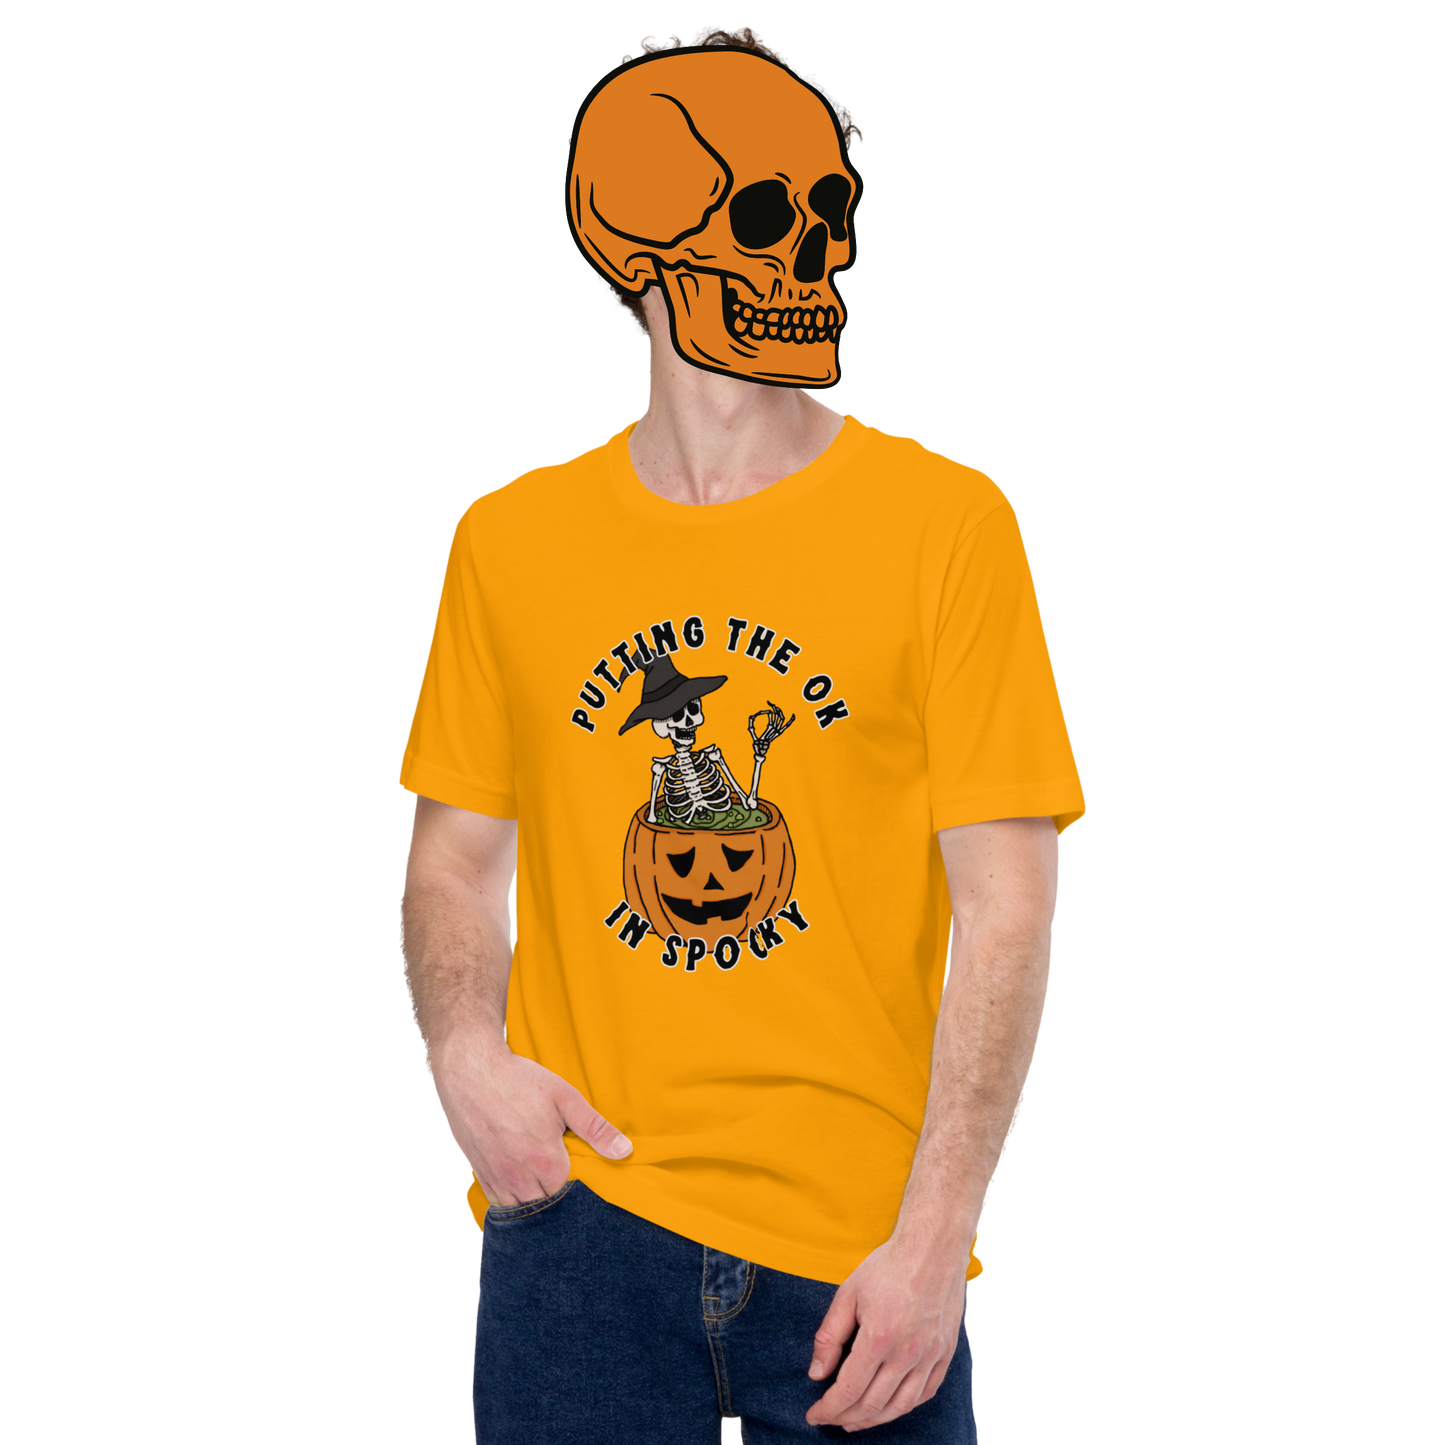 spo(ok)y t-shirt model in pumpkin - gaslit apparel